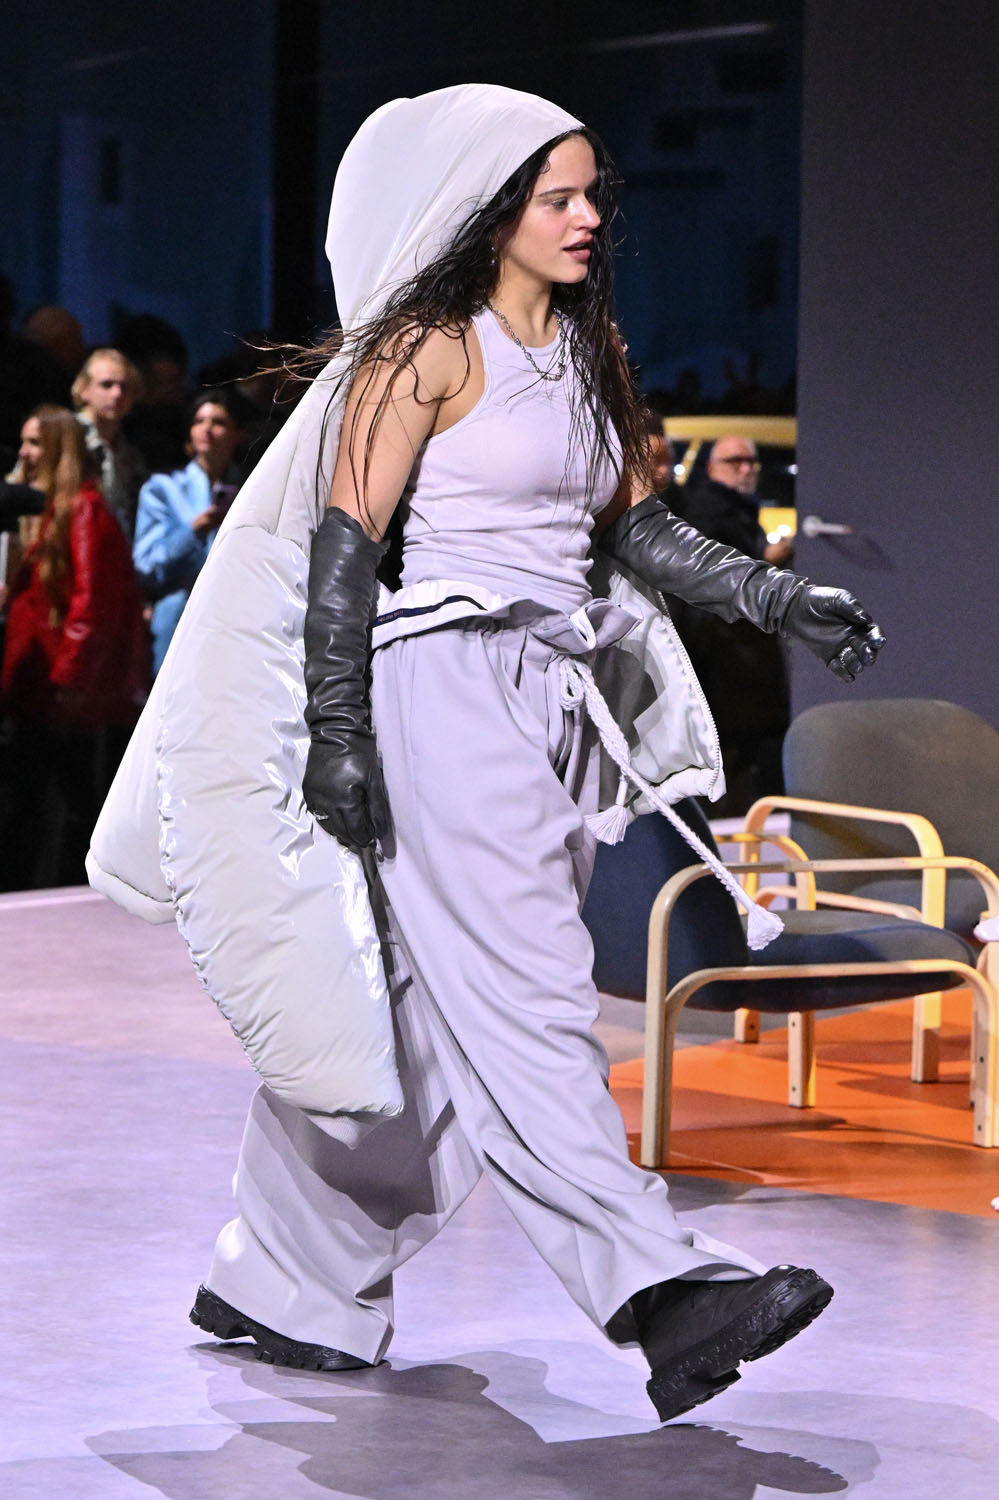 J-HOPE Louis Vuitton 2023 Paris Fashion Show & meets ROSALÍA 